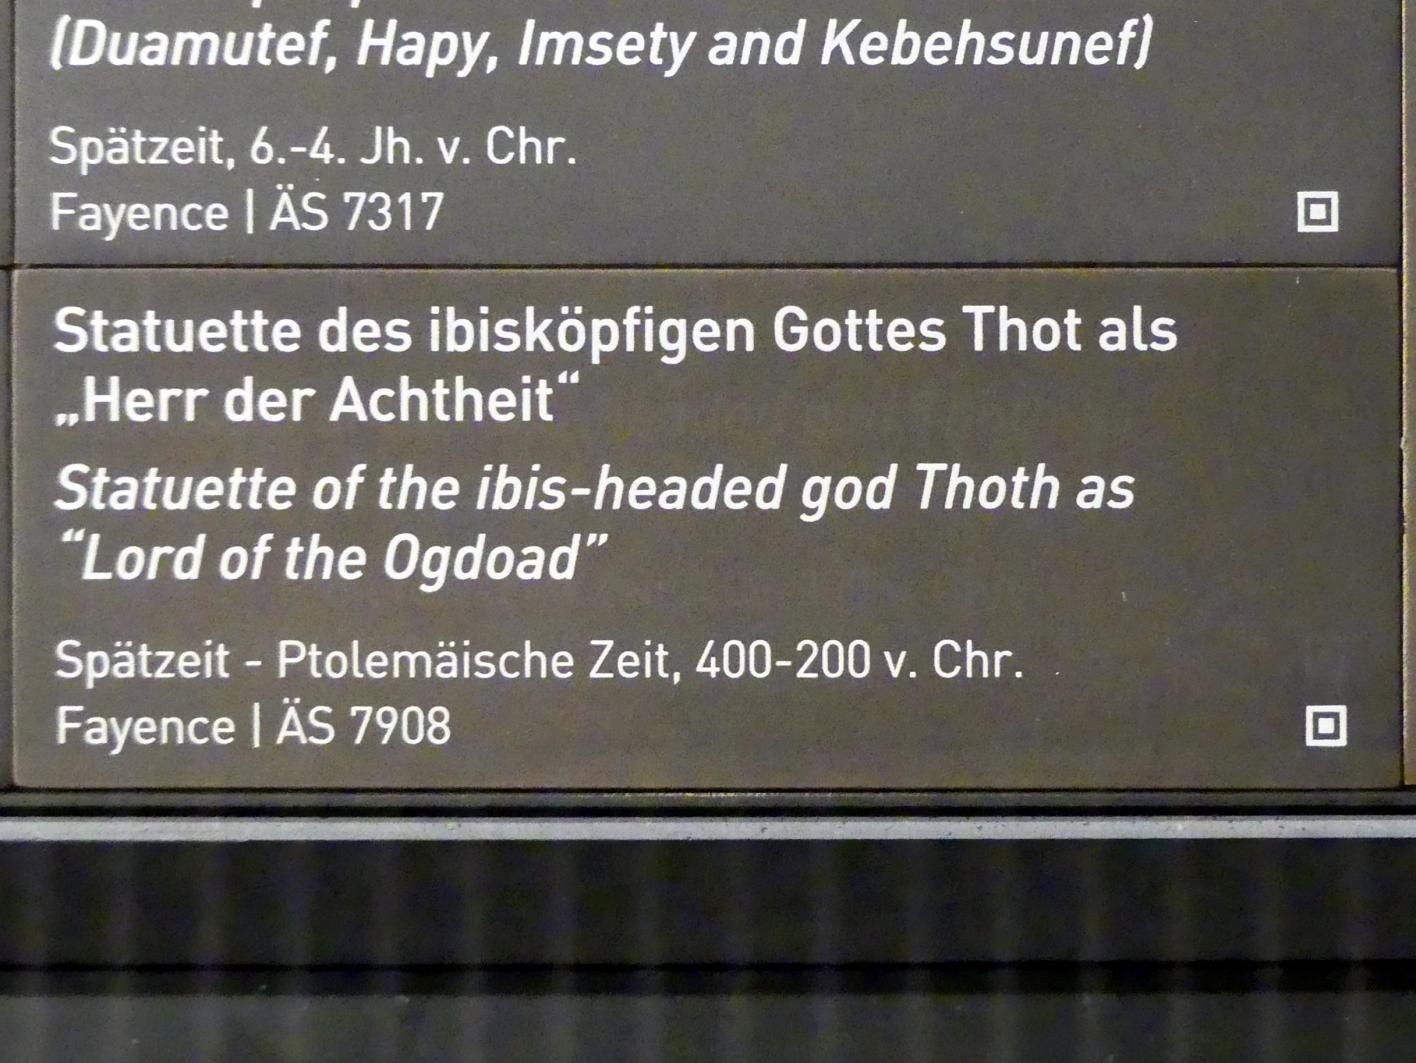 Statuette des ibisköpfigen Gottes Thot als "Herr der Achtheit", Ptolemäische Zeit, 400 v. Chr. - 1 n. Chr., Spätzeit, 360 - 342 v. Chr., 400 - 200 v. Chr., Bild 4/4